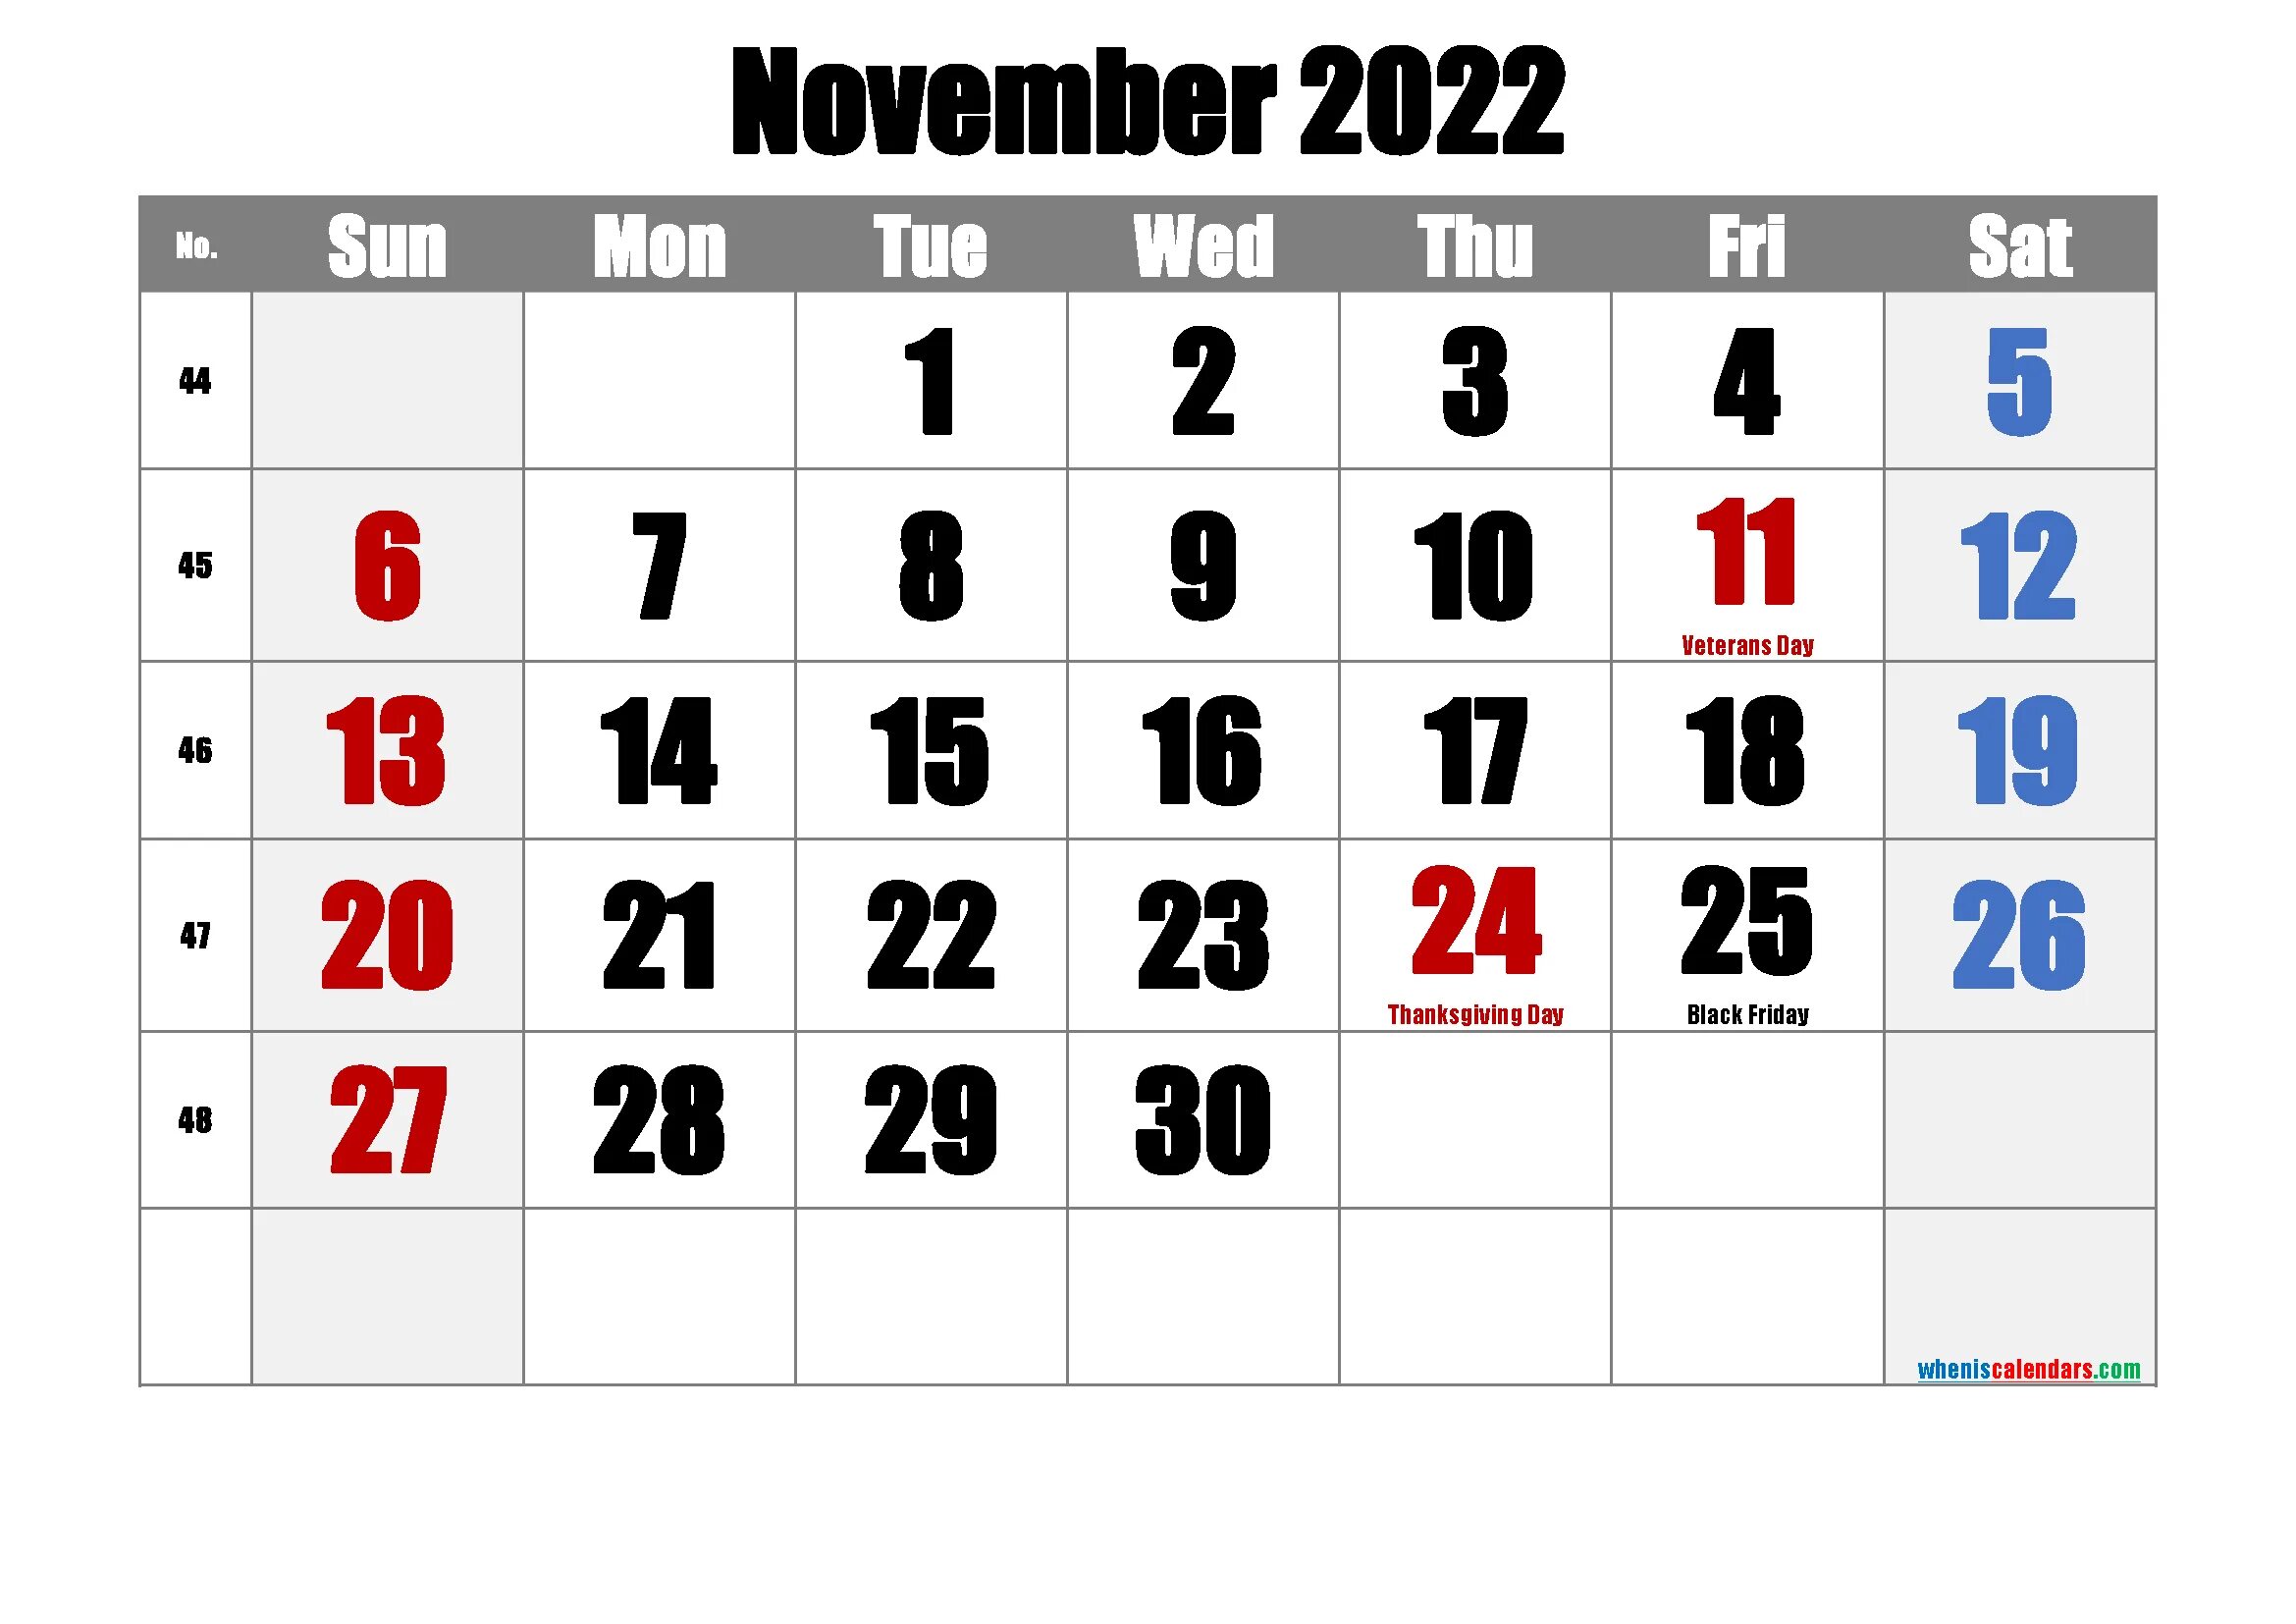 Нояб 2022. Календарь на октябрь 2022 года. Календарь ноябрь 2022. Календарь на ноябрь 2022 года. Календарь на ноябрь 2022г.